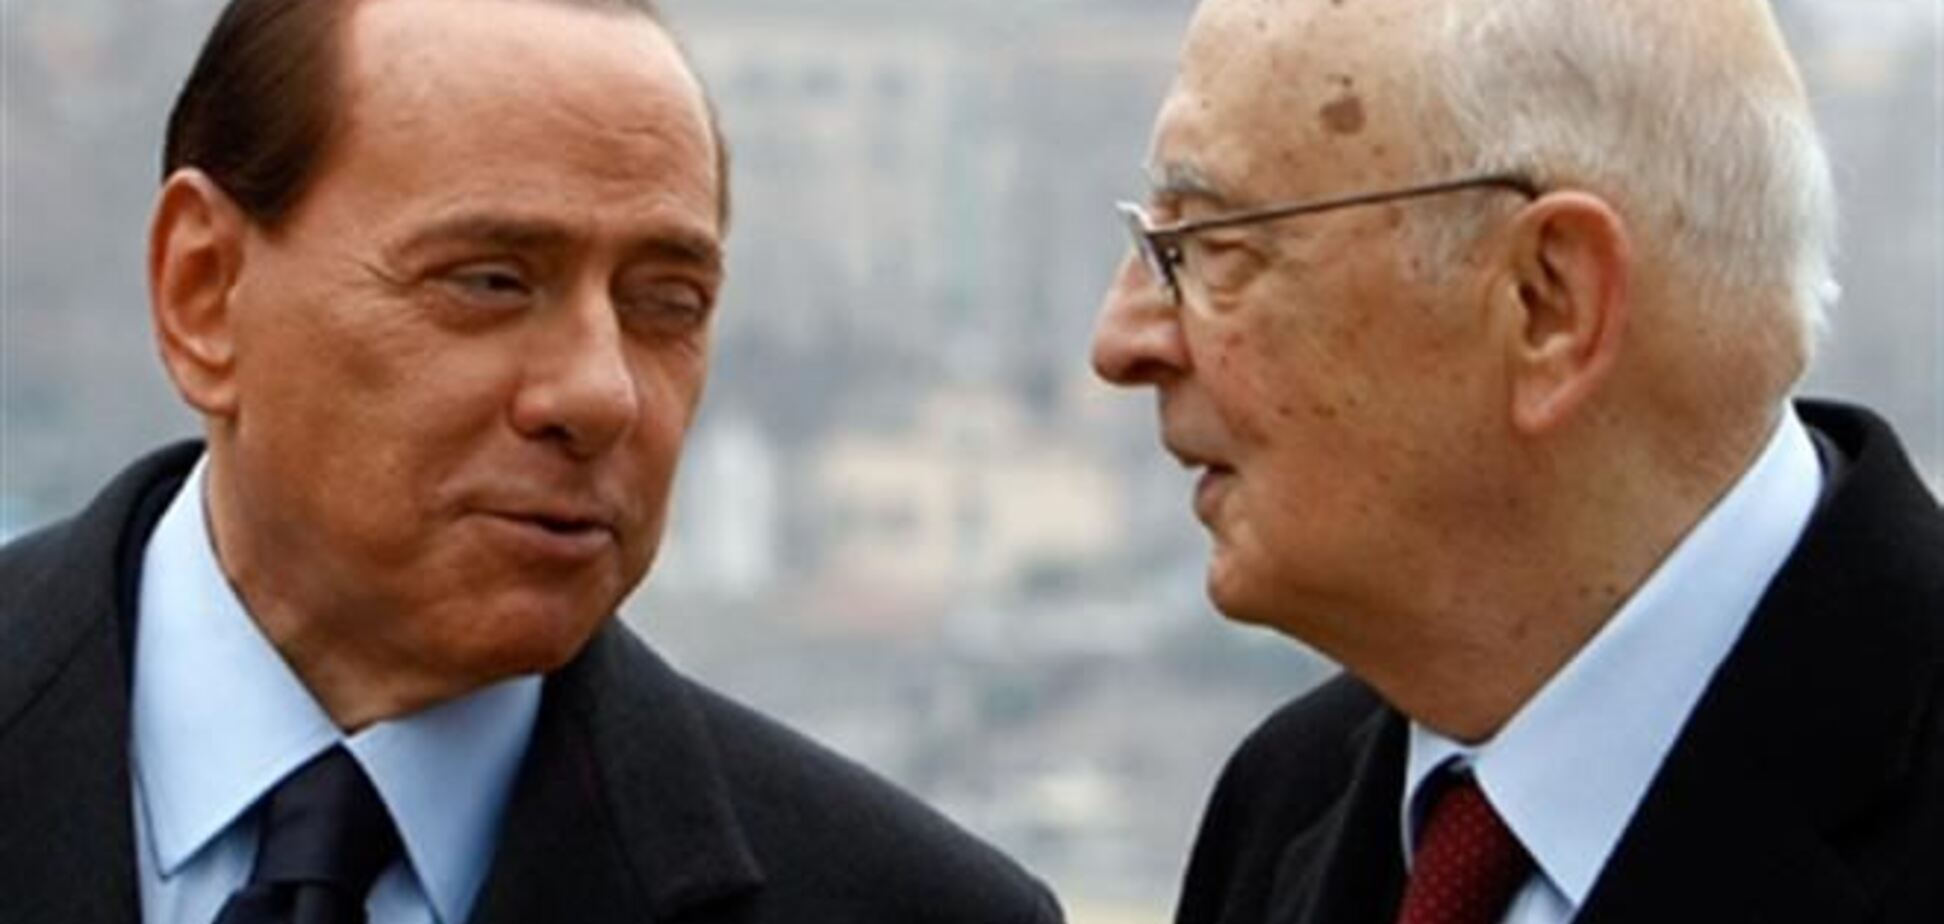 Президент Италии не нашел оснований для помилования Берлускони